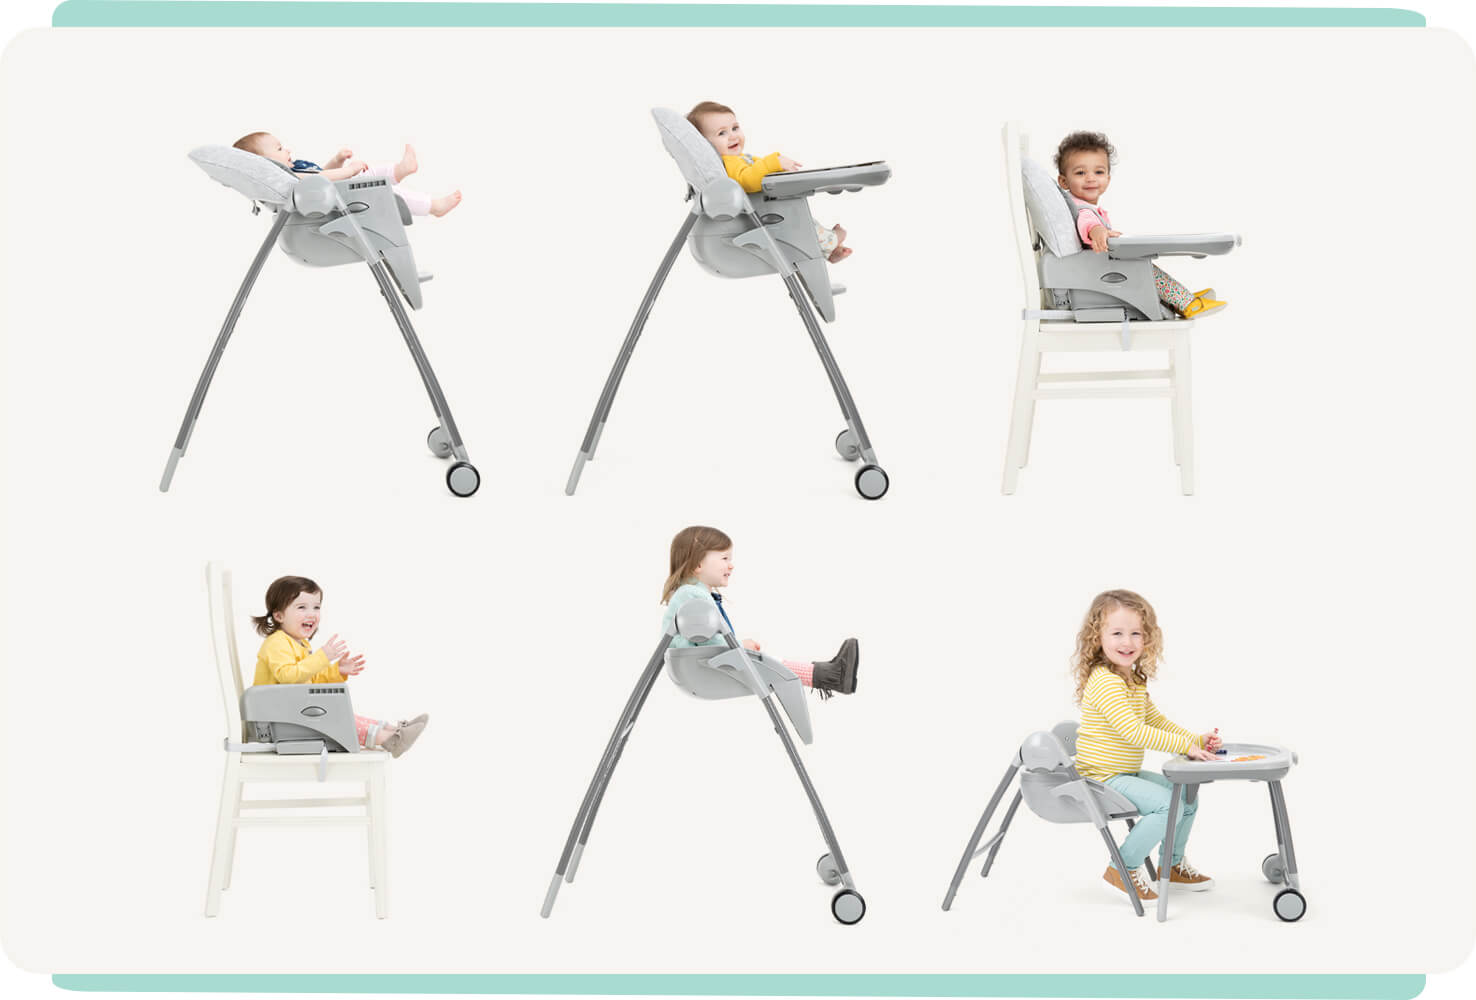 6 Multiply Hochstühle mit Liege- und Sitzfunktion, Sitzerhöhung mit Tablett auf Stuhl, Sitzerhöhung ohne Tablett auf Stuhl, Sitzerhöhung auf Hochstuhlbeinen und Kleinkindersitz mit Sitztablett. 